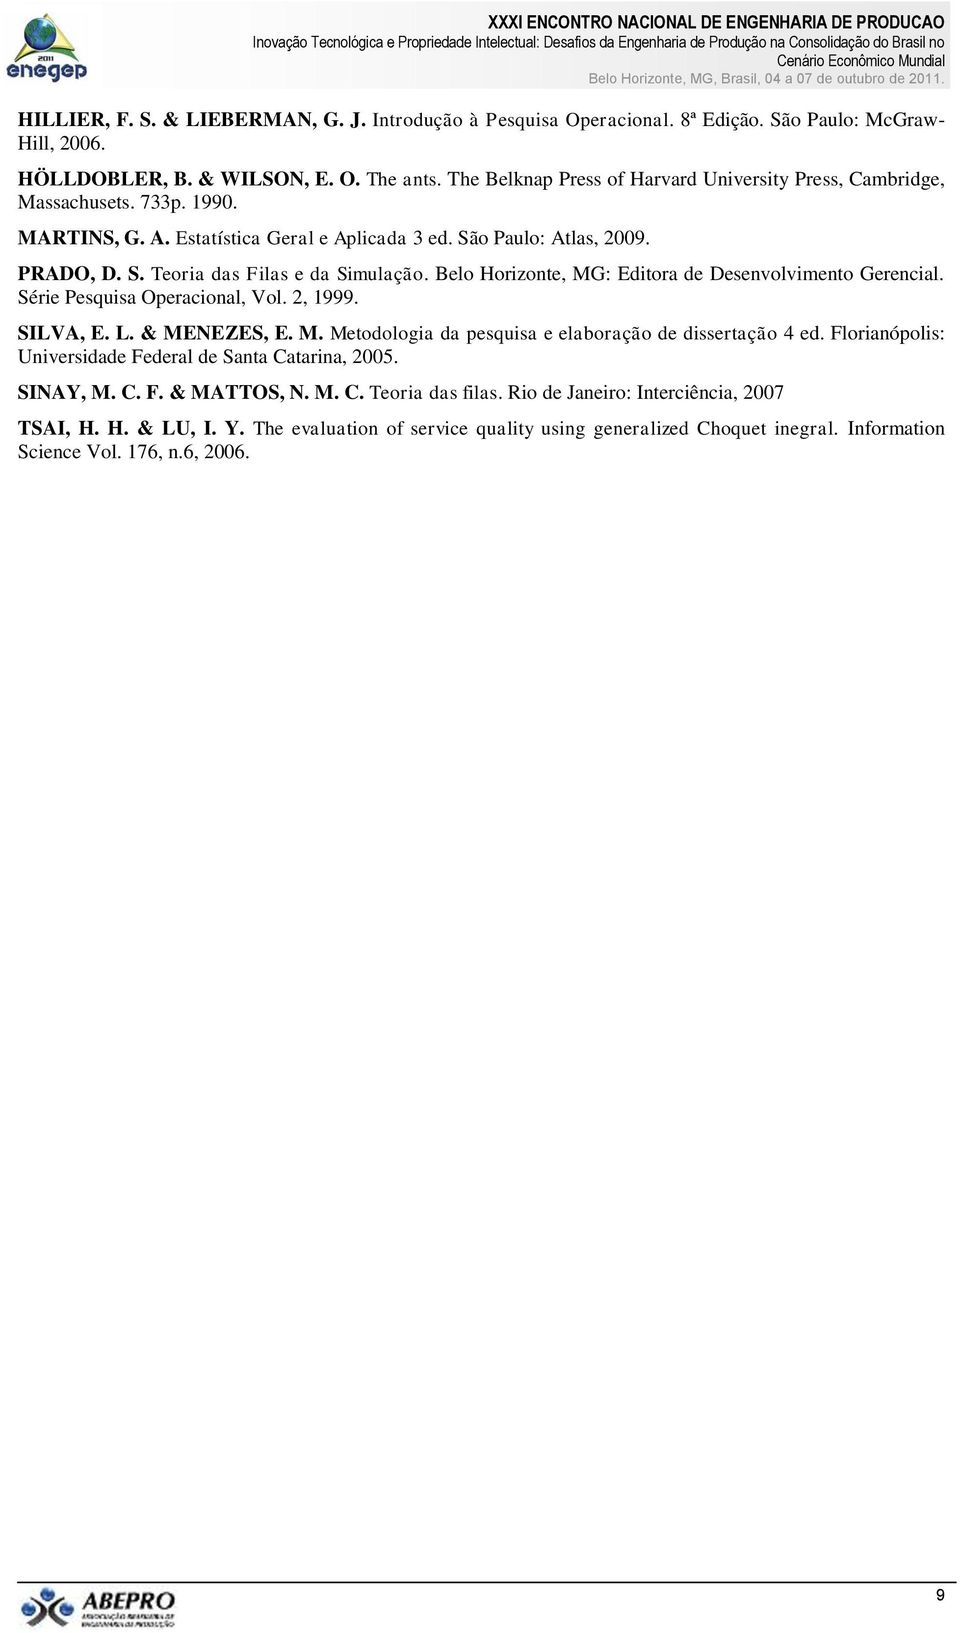 Belo Horizonte, MG: Editora de Desenvolvimento Gerencial. Série Pesquisa Operacional, Vol., 1999. SILVA, E. L. & MENEZES, E. M. Metodologia da pesquisa e elaboração de dissertação 4 ed.